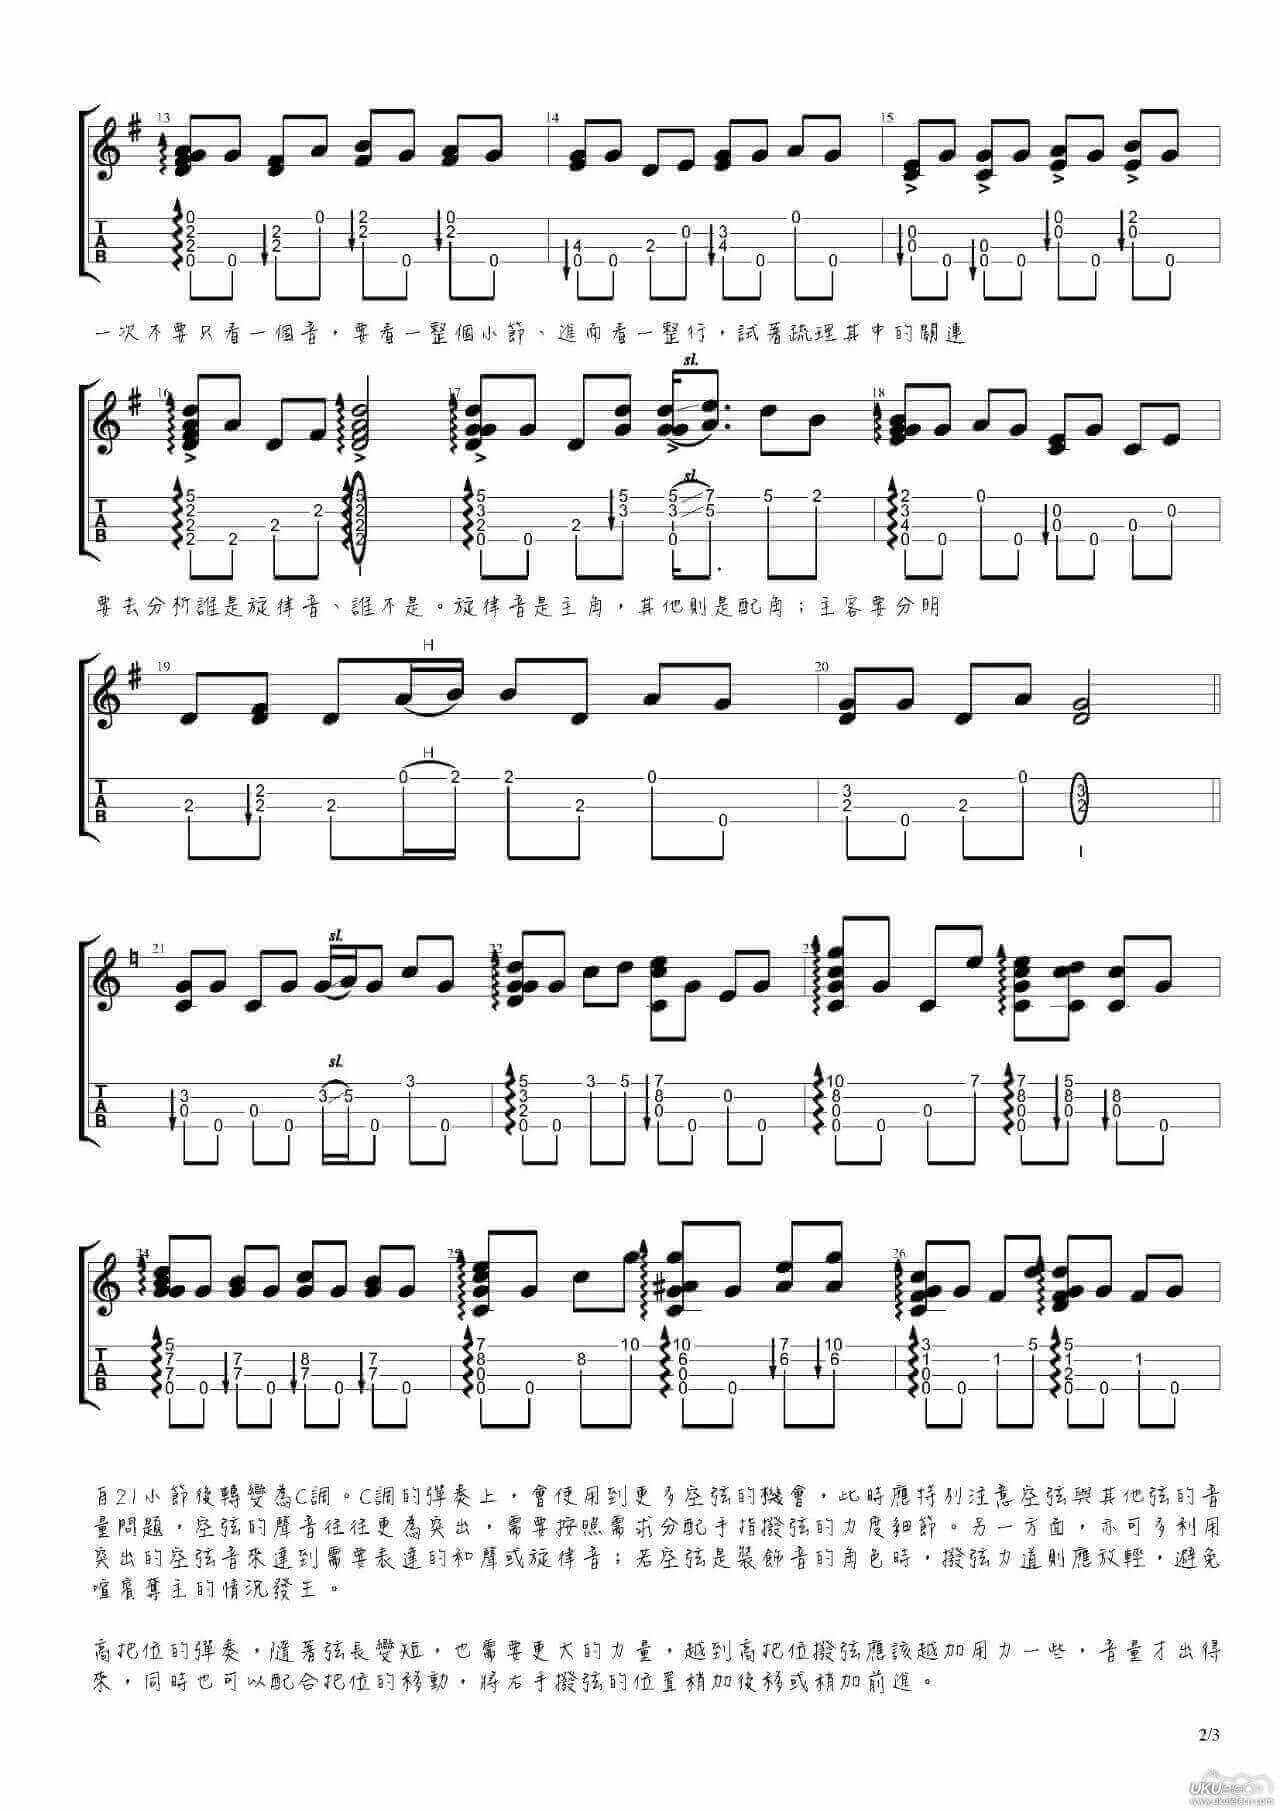 G.J Lee鸡汤老师改编的一首台湾地区的经典民谣《望春风》  ukulele指弹曲谱插图